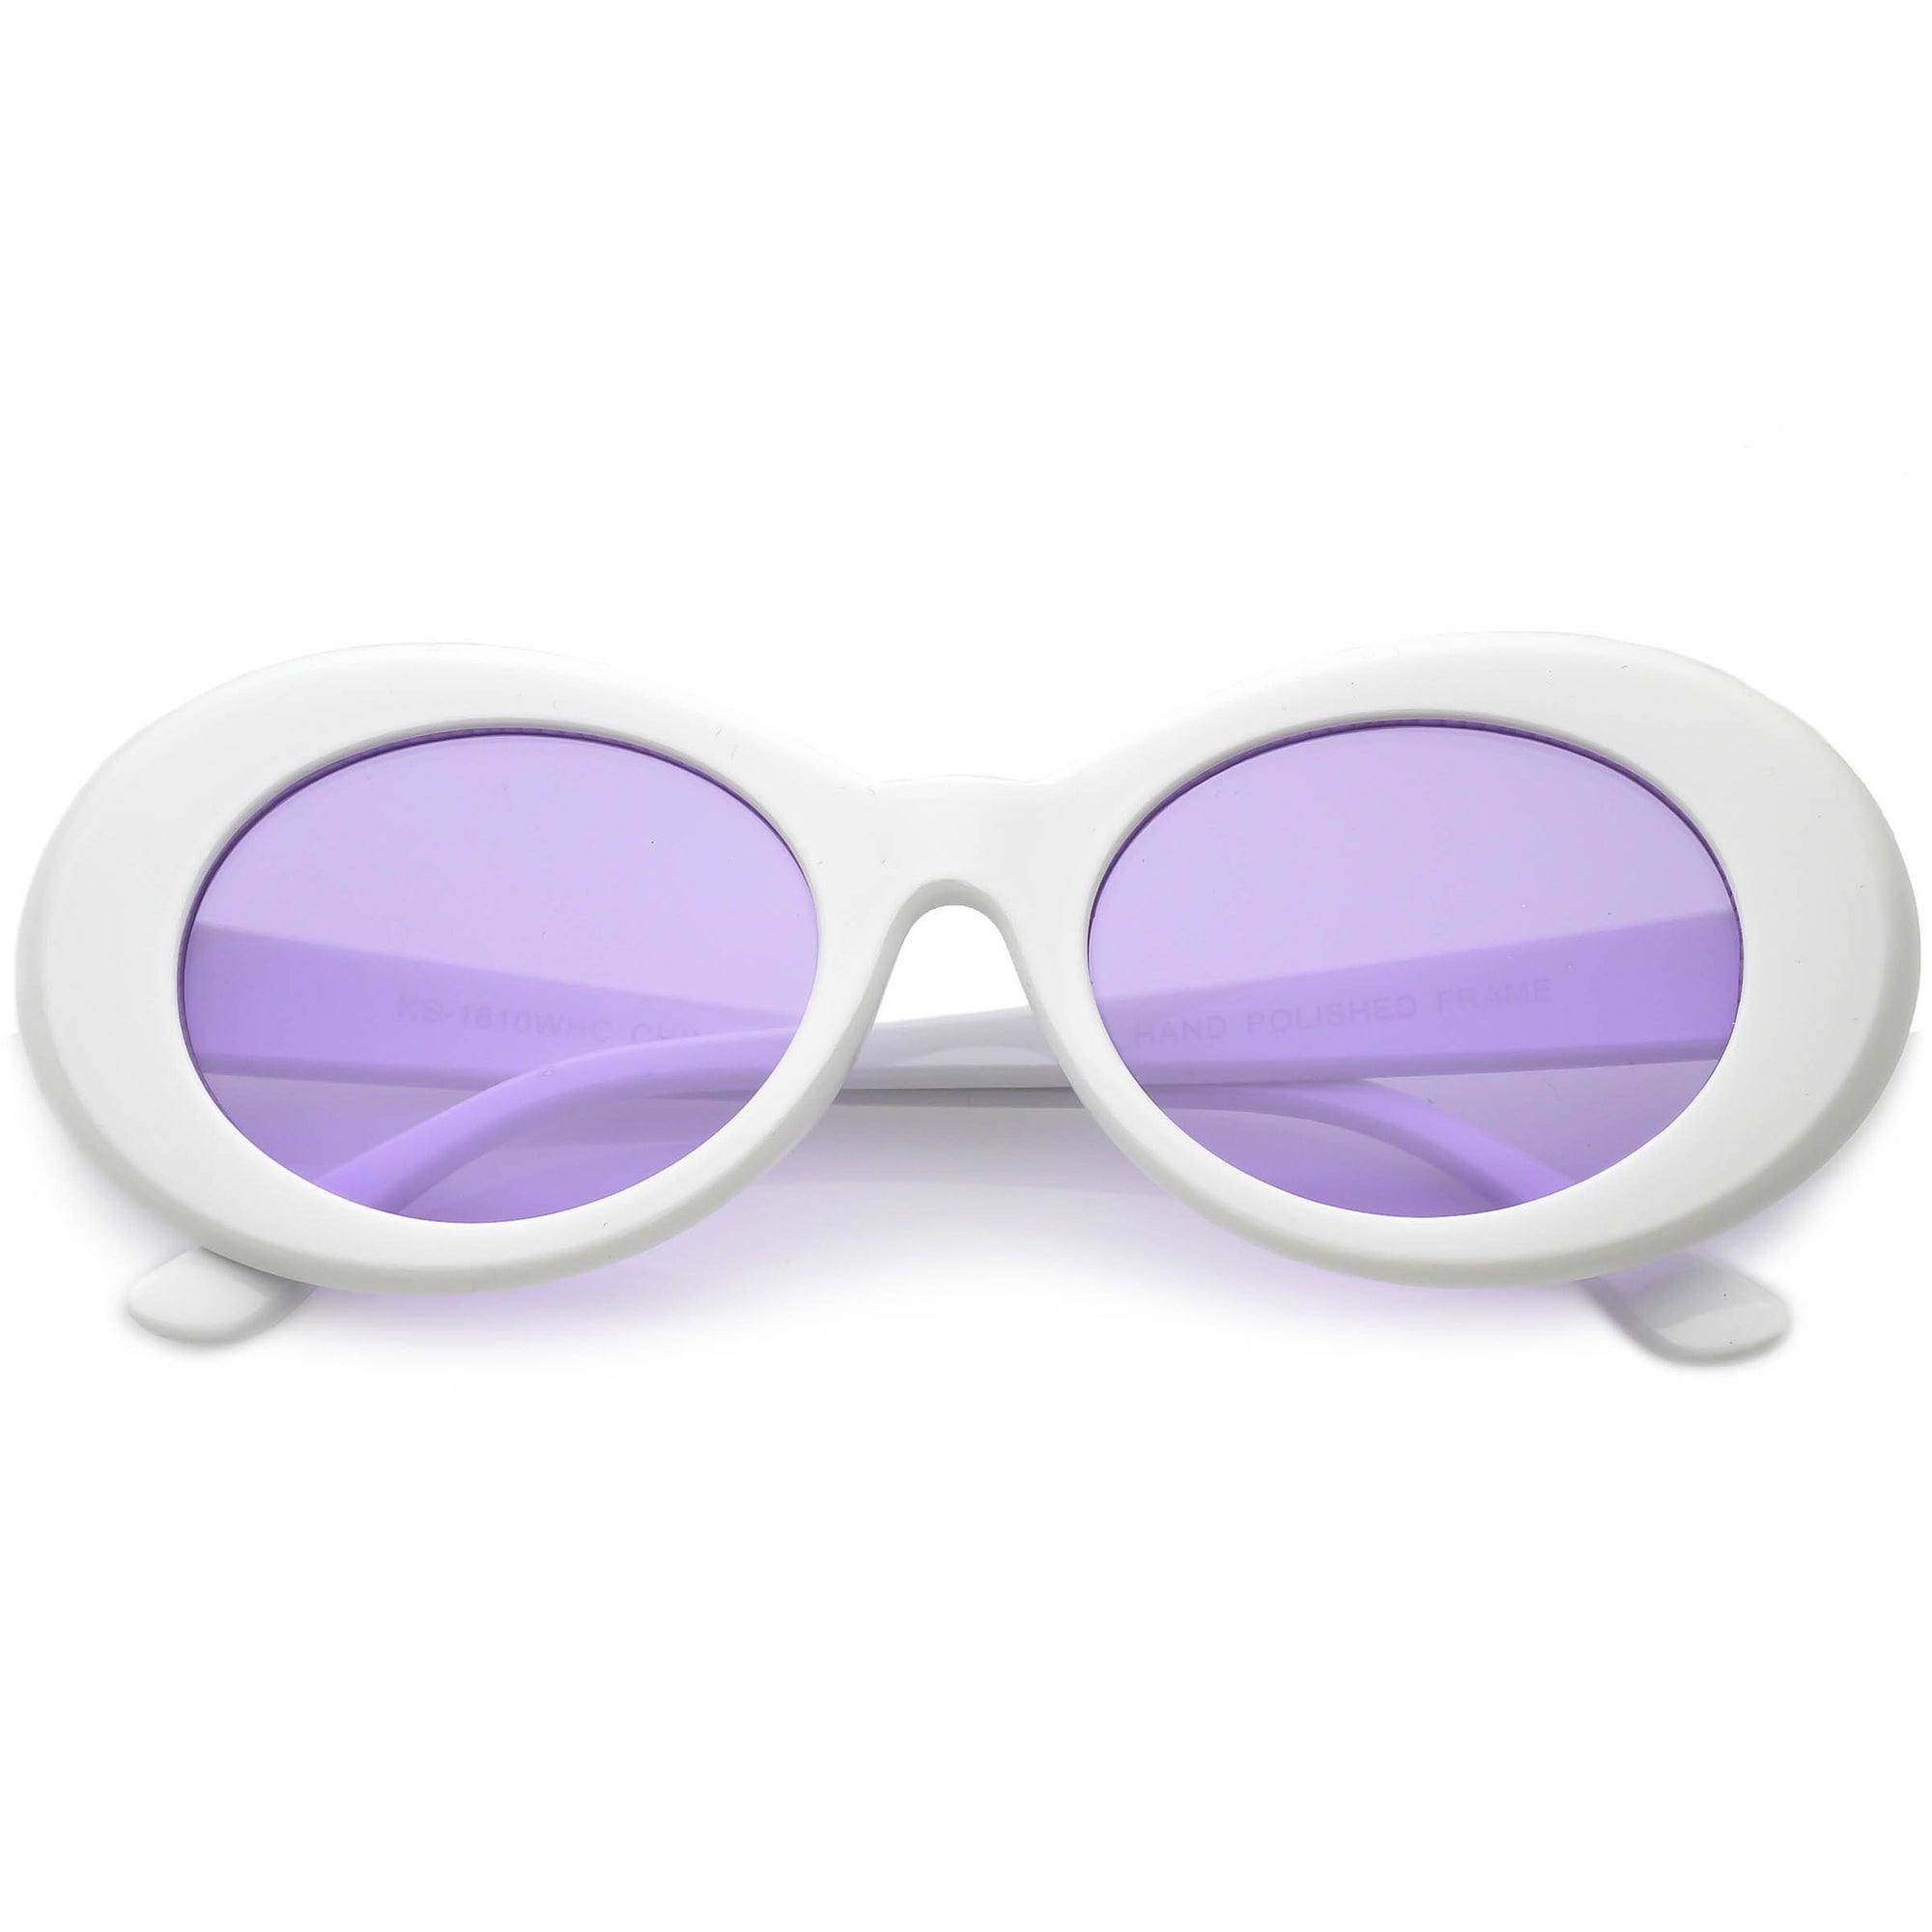 Retro 1990s Fashion Clout Goggle Oval Colored Lens Sunglasses Zerouv 